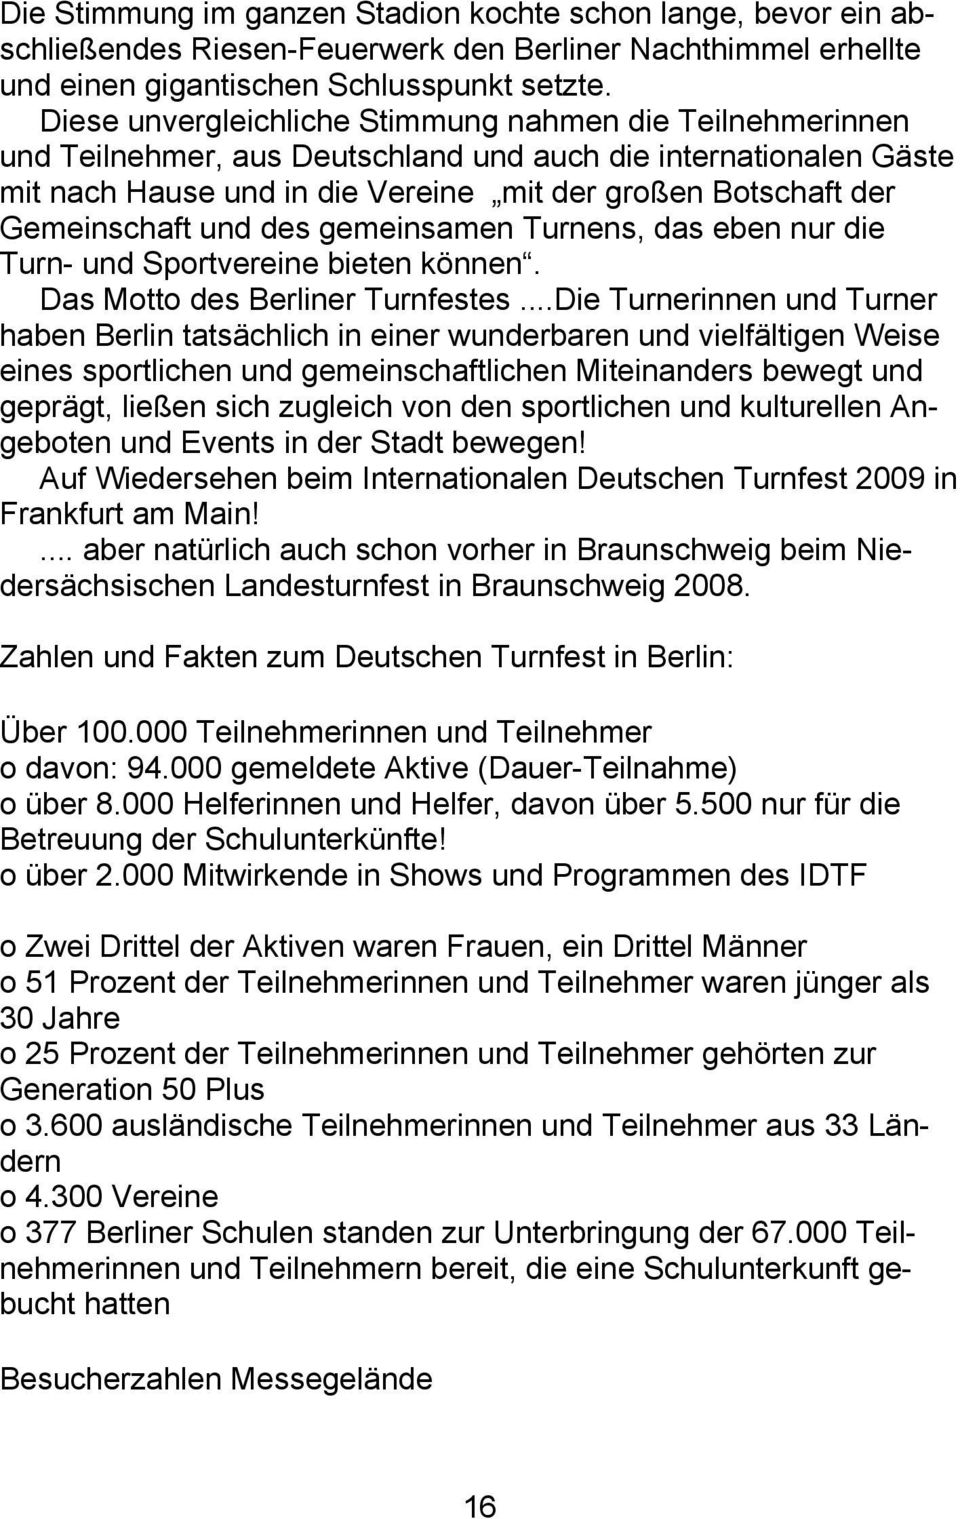 Gemeinschaft und des gemeinsamen Turnens, das eben nur die Turn- und Sportvereine bieten können. Das Motto des Berliner Turnfestes.